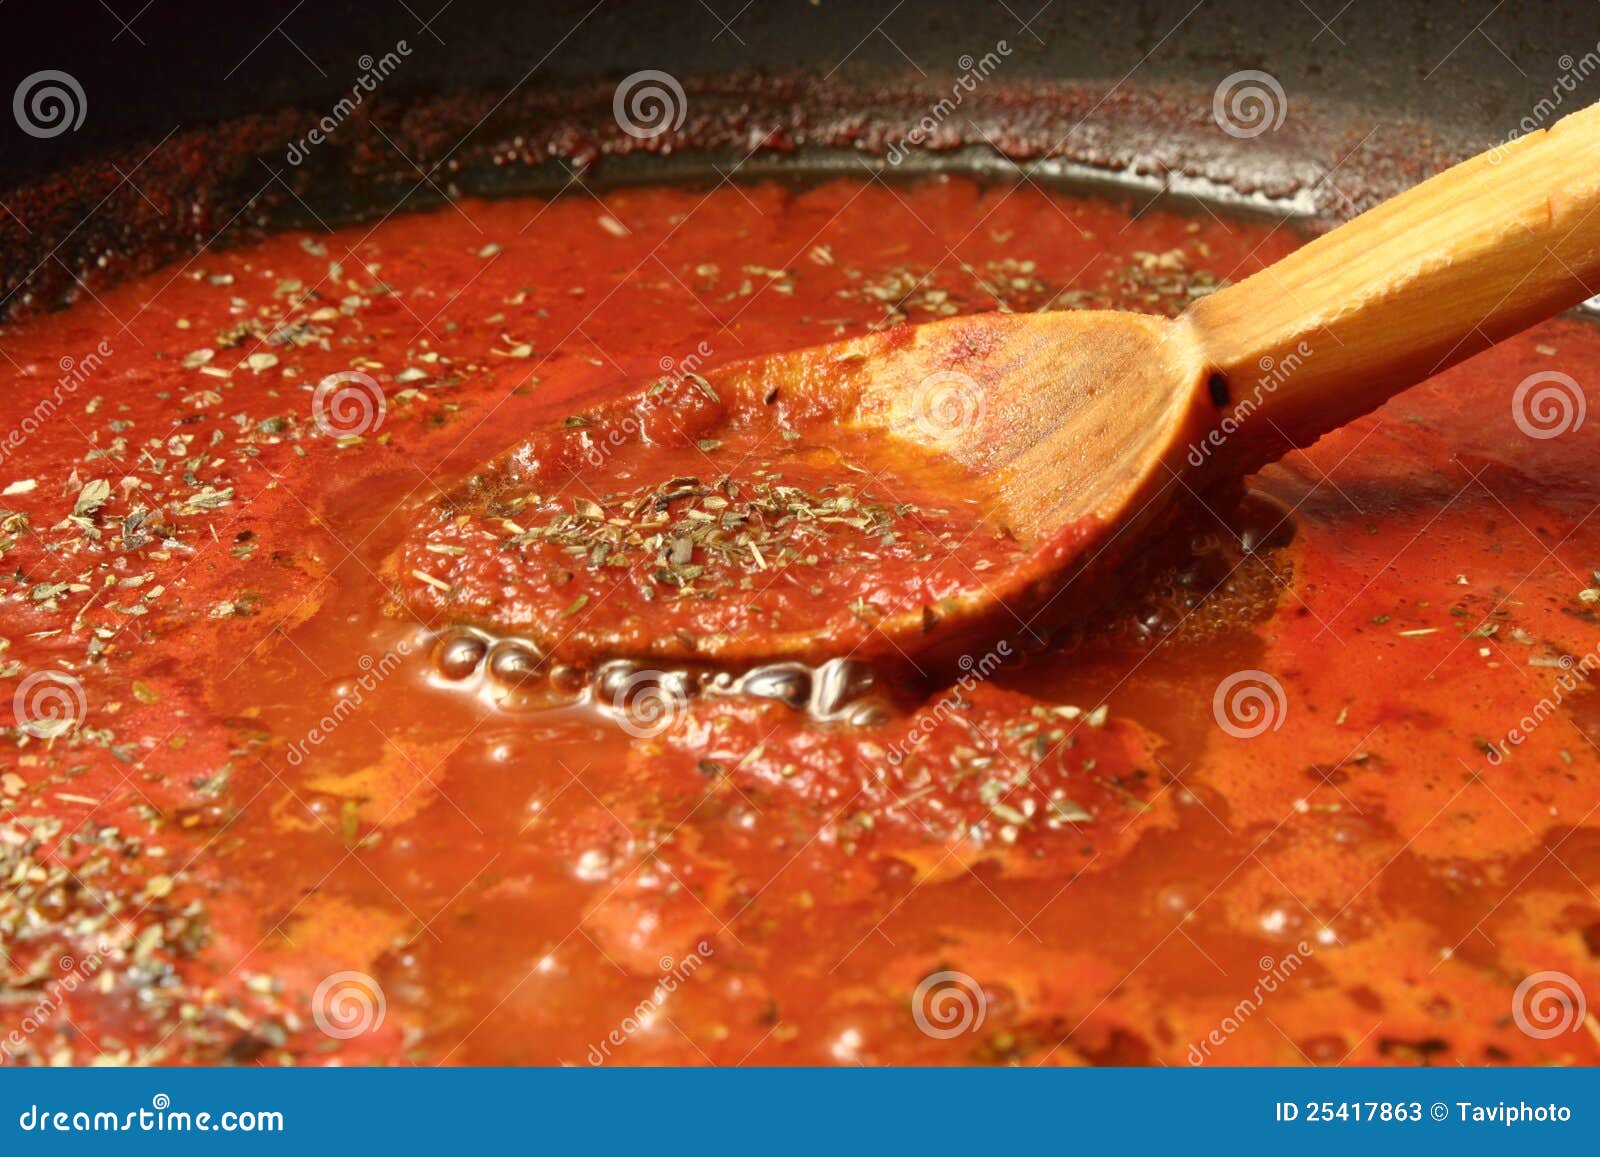 томатный соус для пиццы рецепт с фото фото 115